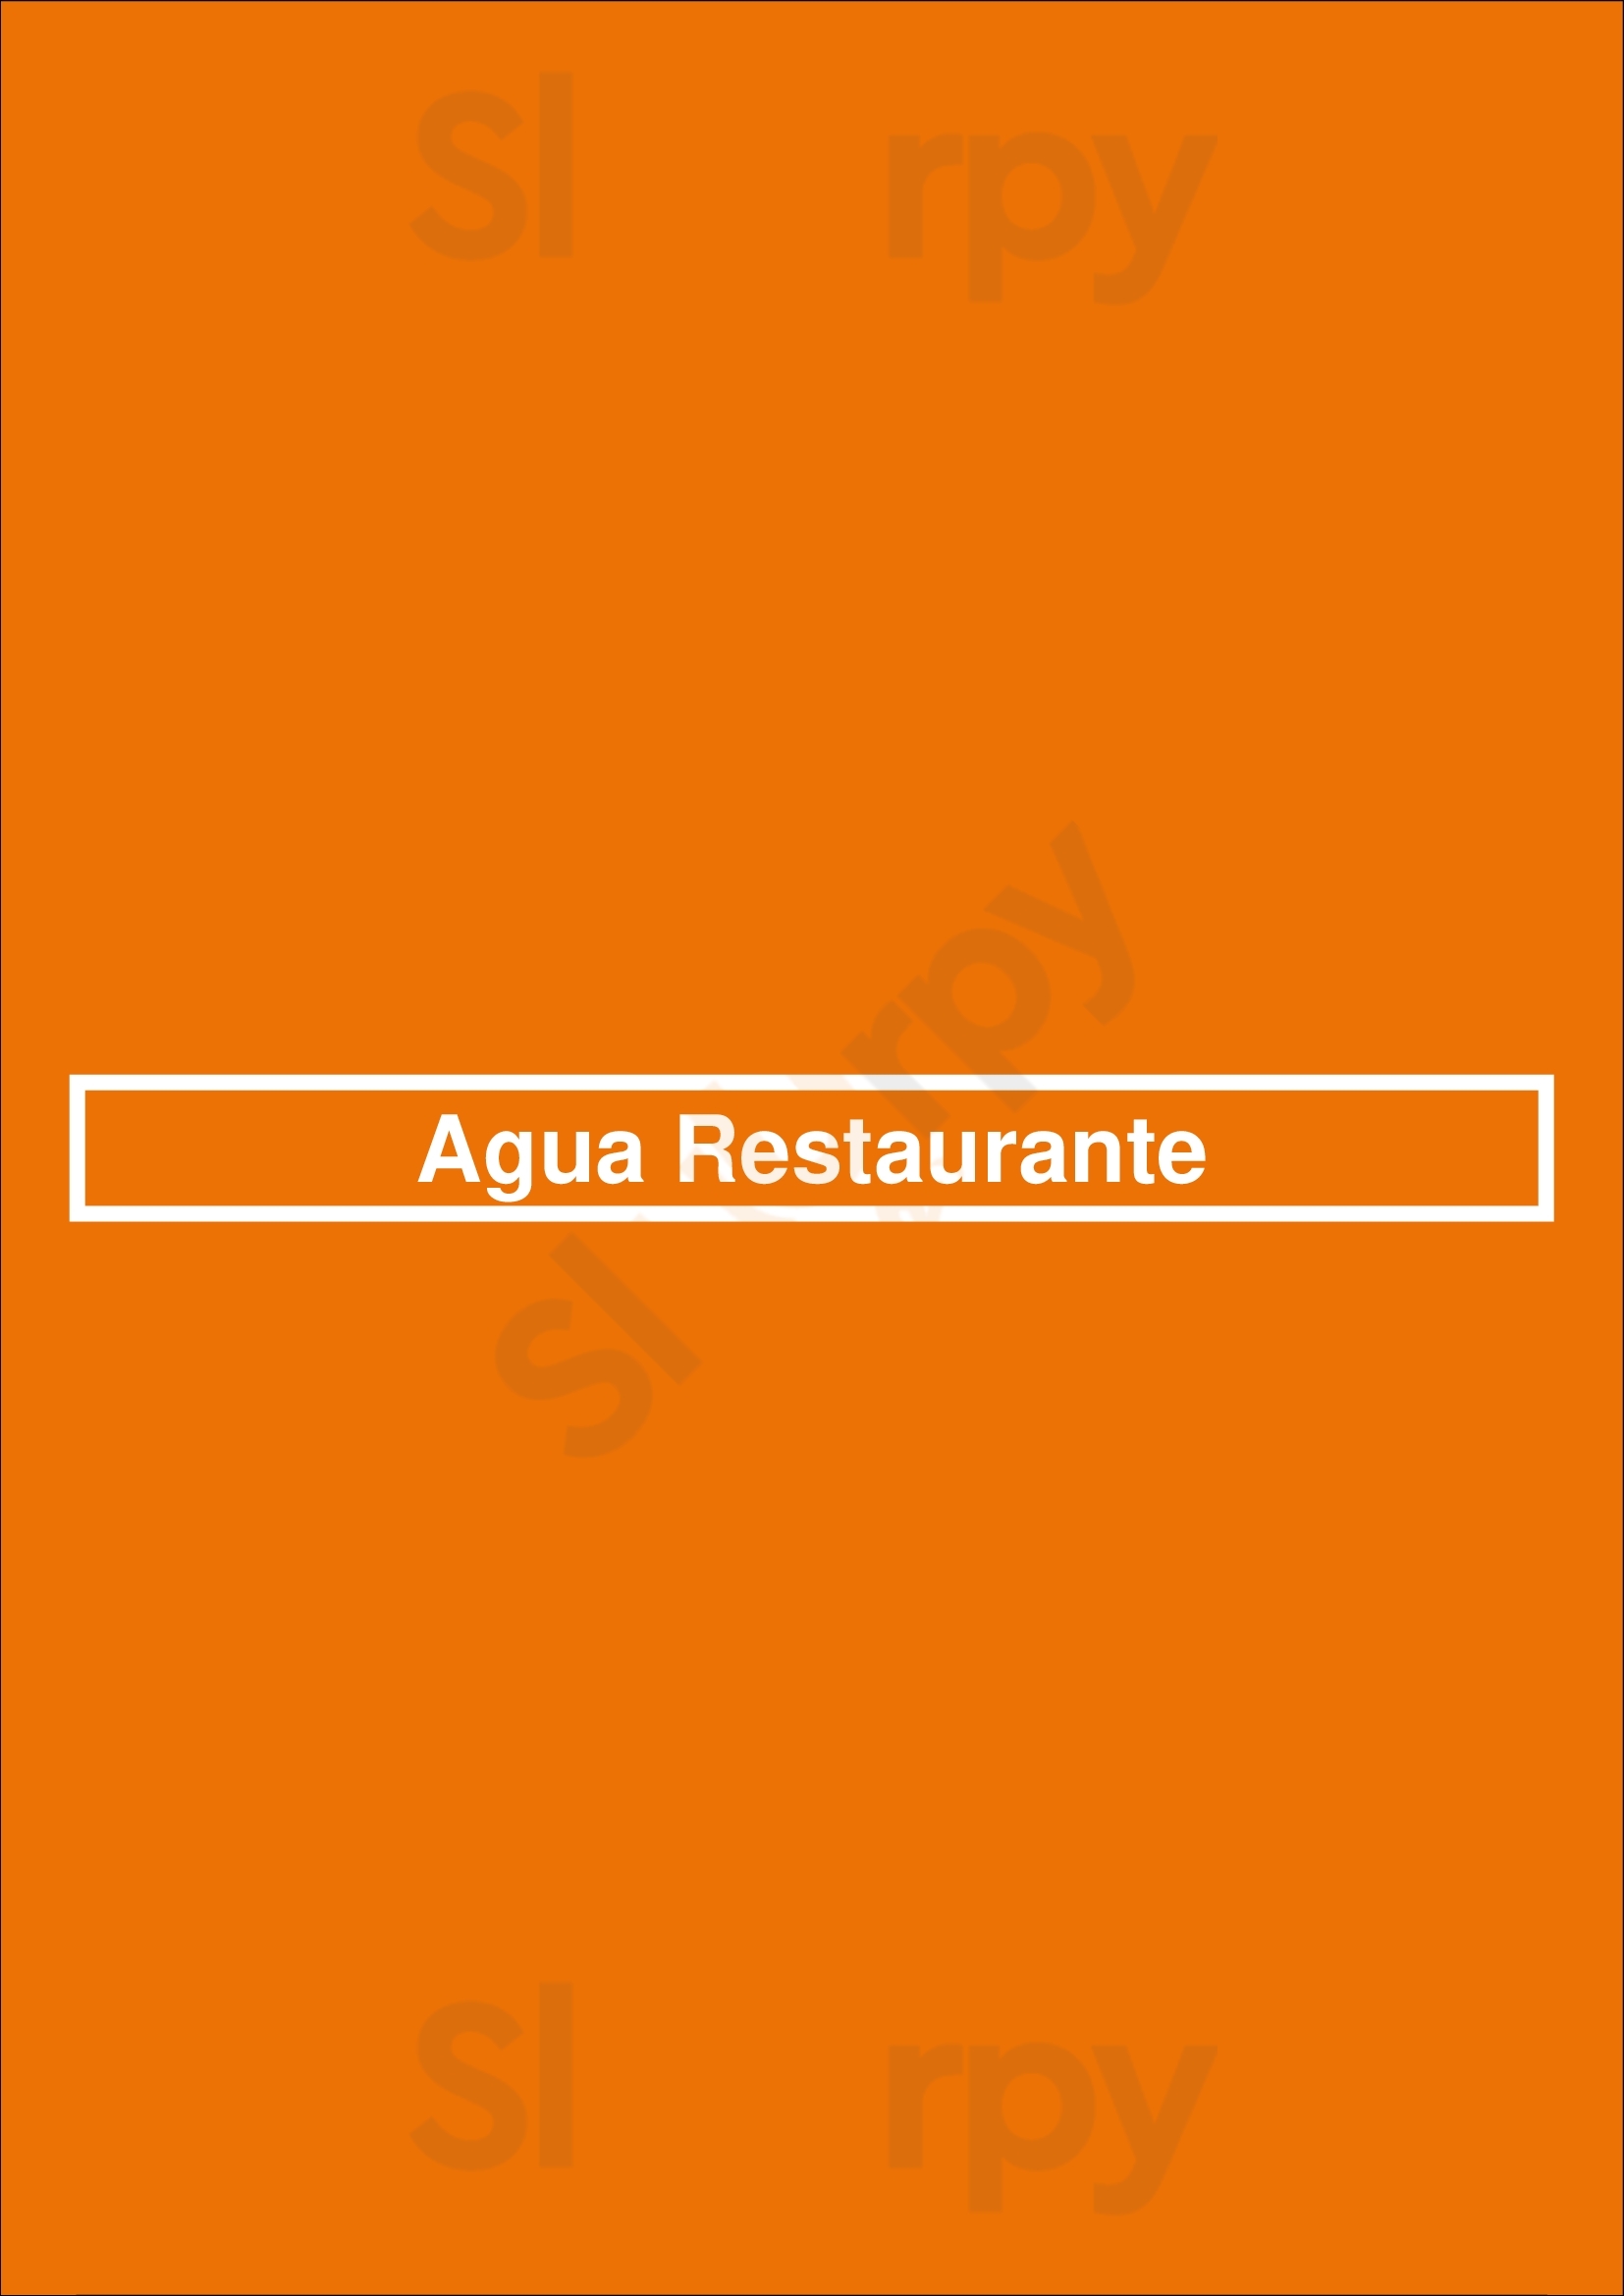 Agua Restaurante Lisboa Menu - 1